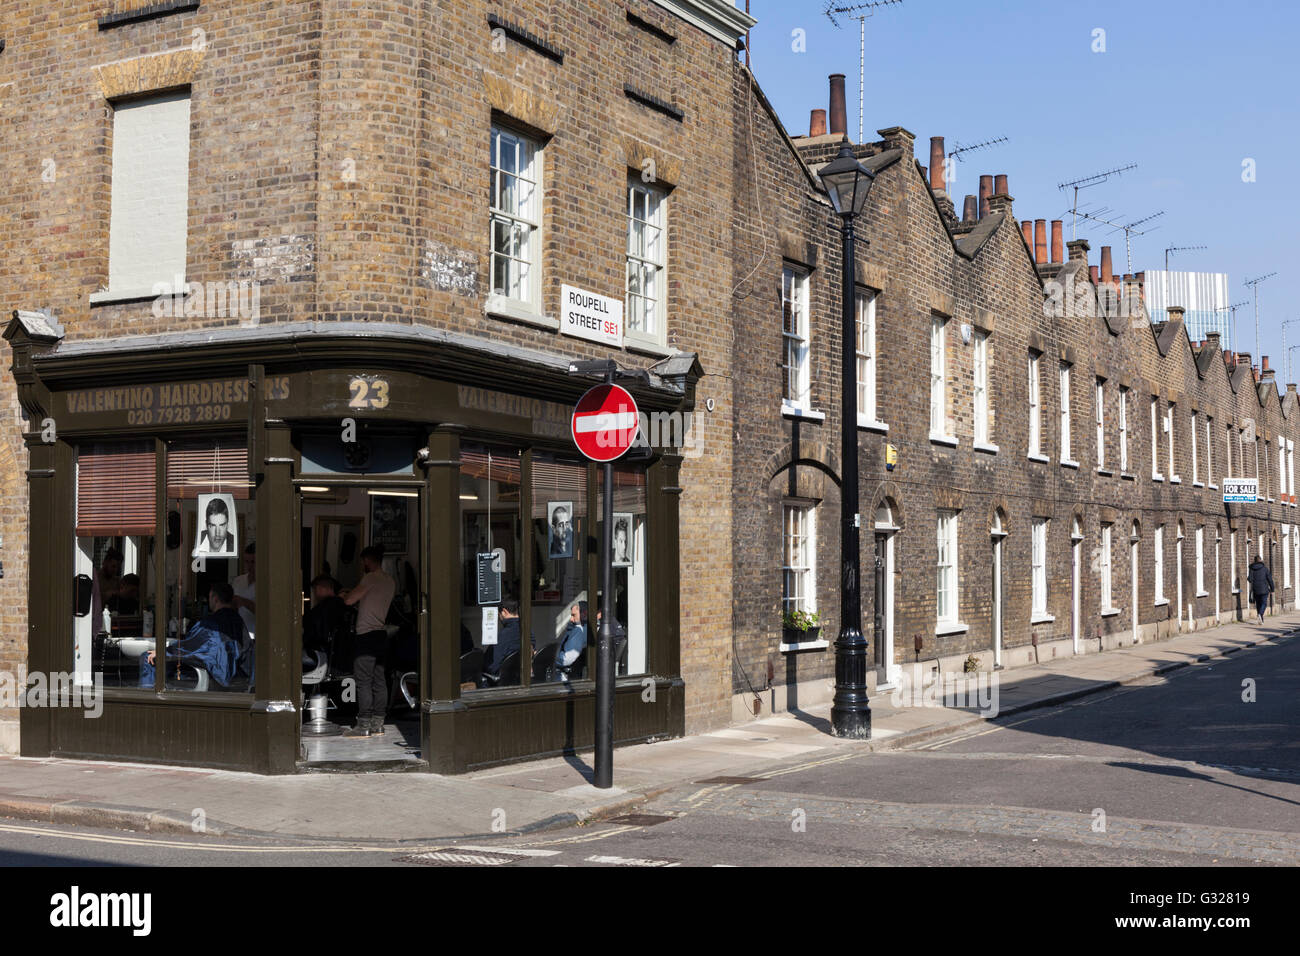 Salon de coiffure à l'angle de la rue Roupell à Lambeth, Londres, Angleterre. Banque D'Images